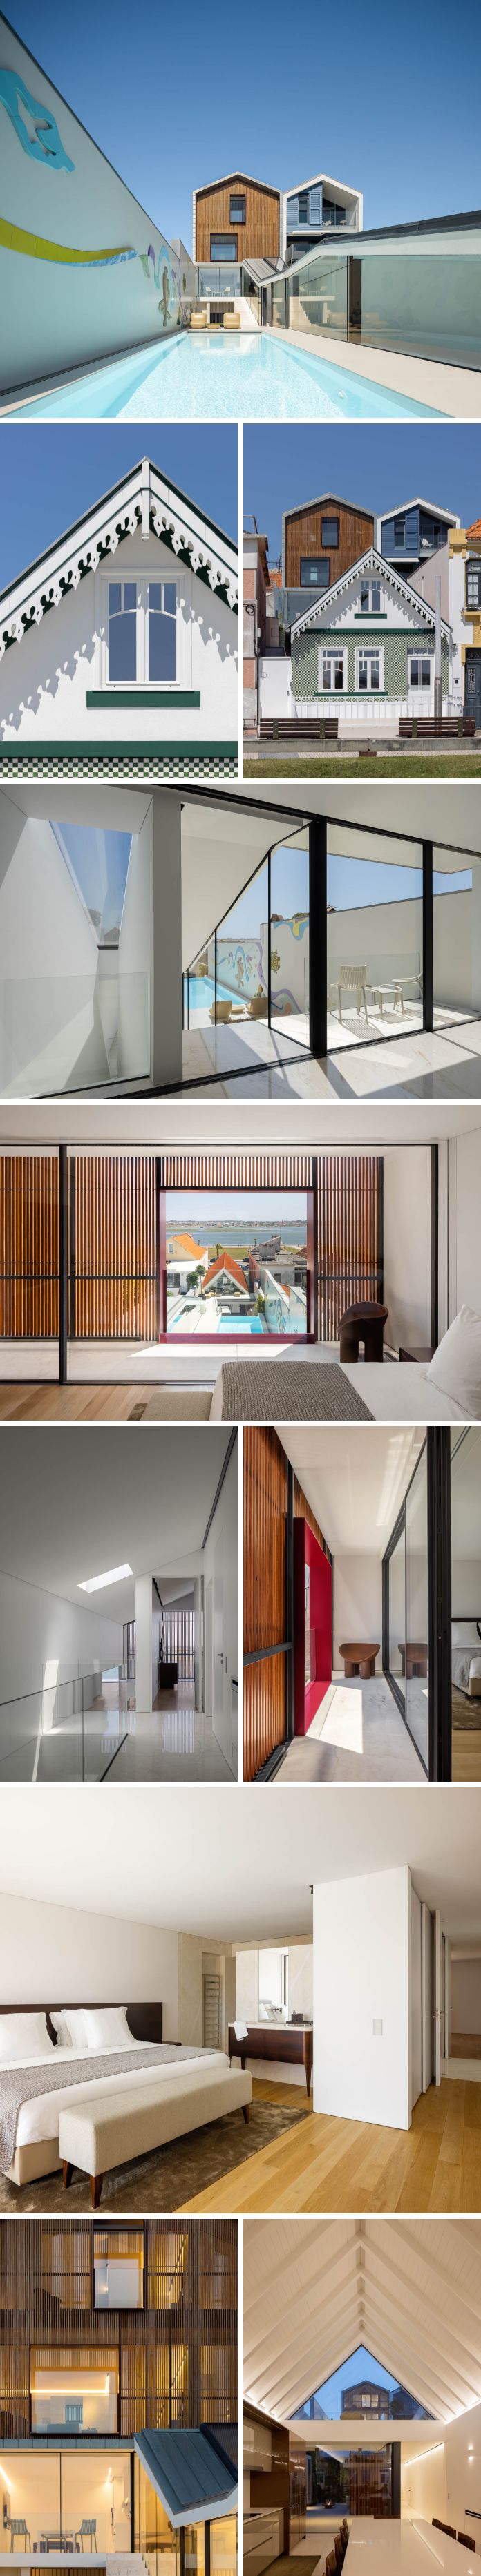 Espaço Objecto designed a distinctive house located in Aveiro, Portugal